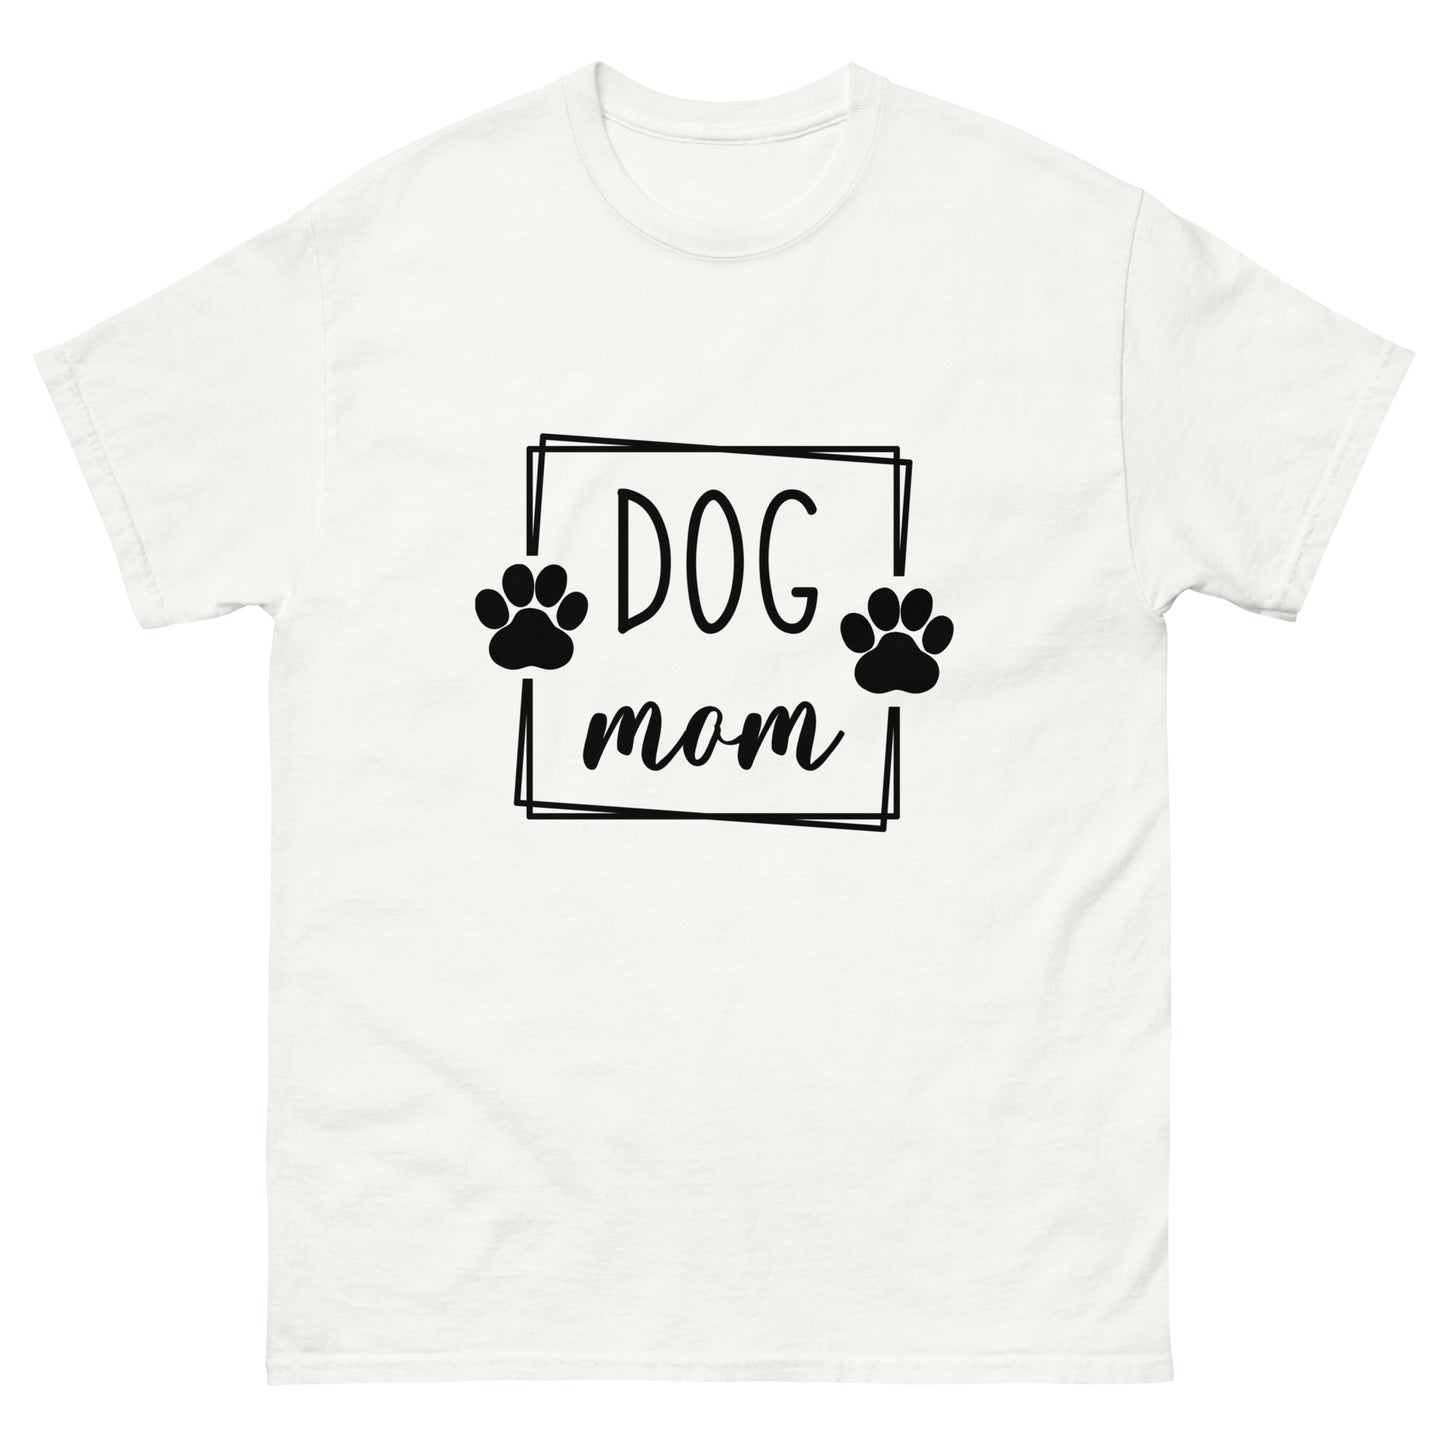 Dog Mom - classic tee